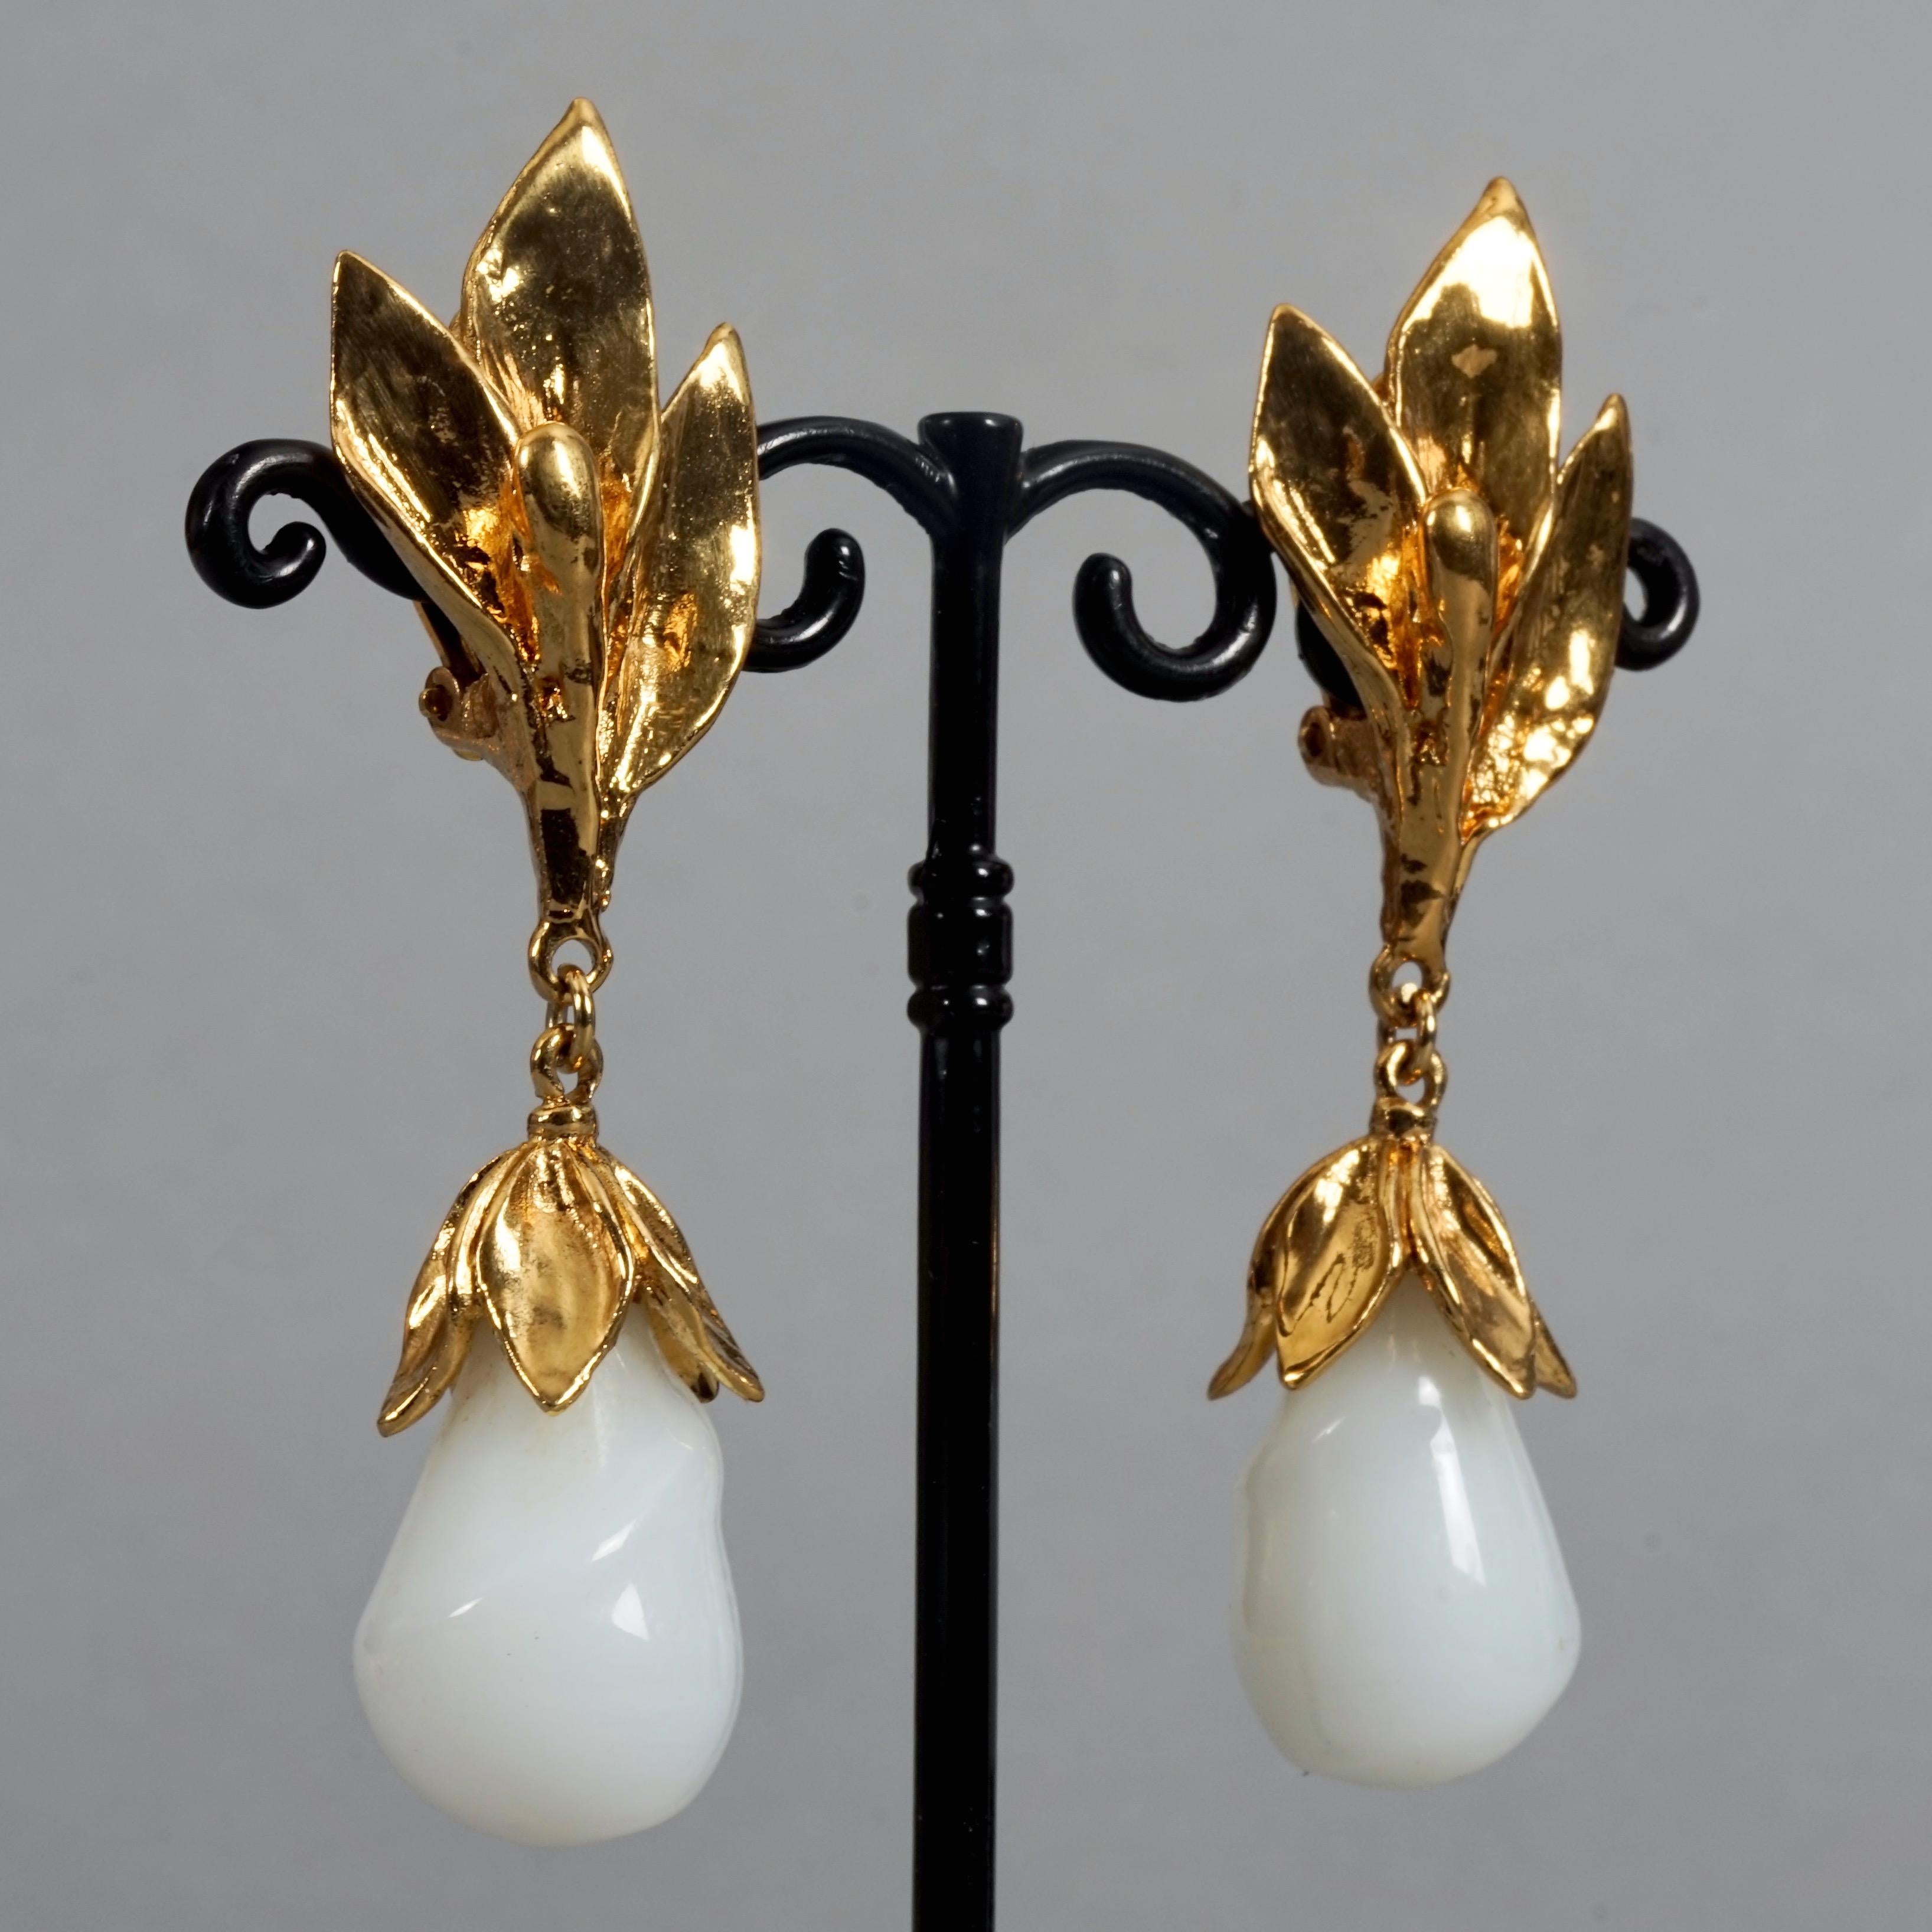 Vintage YVES SAINT LAURENT Ysl by Goossens Flower Glass Milk Teardrop Earrings 1